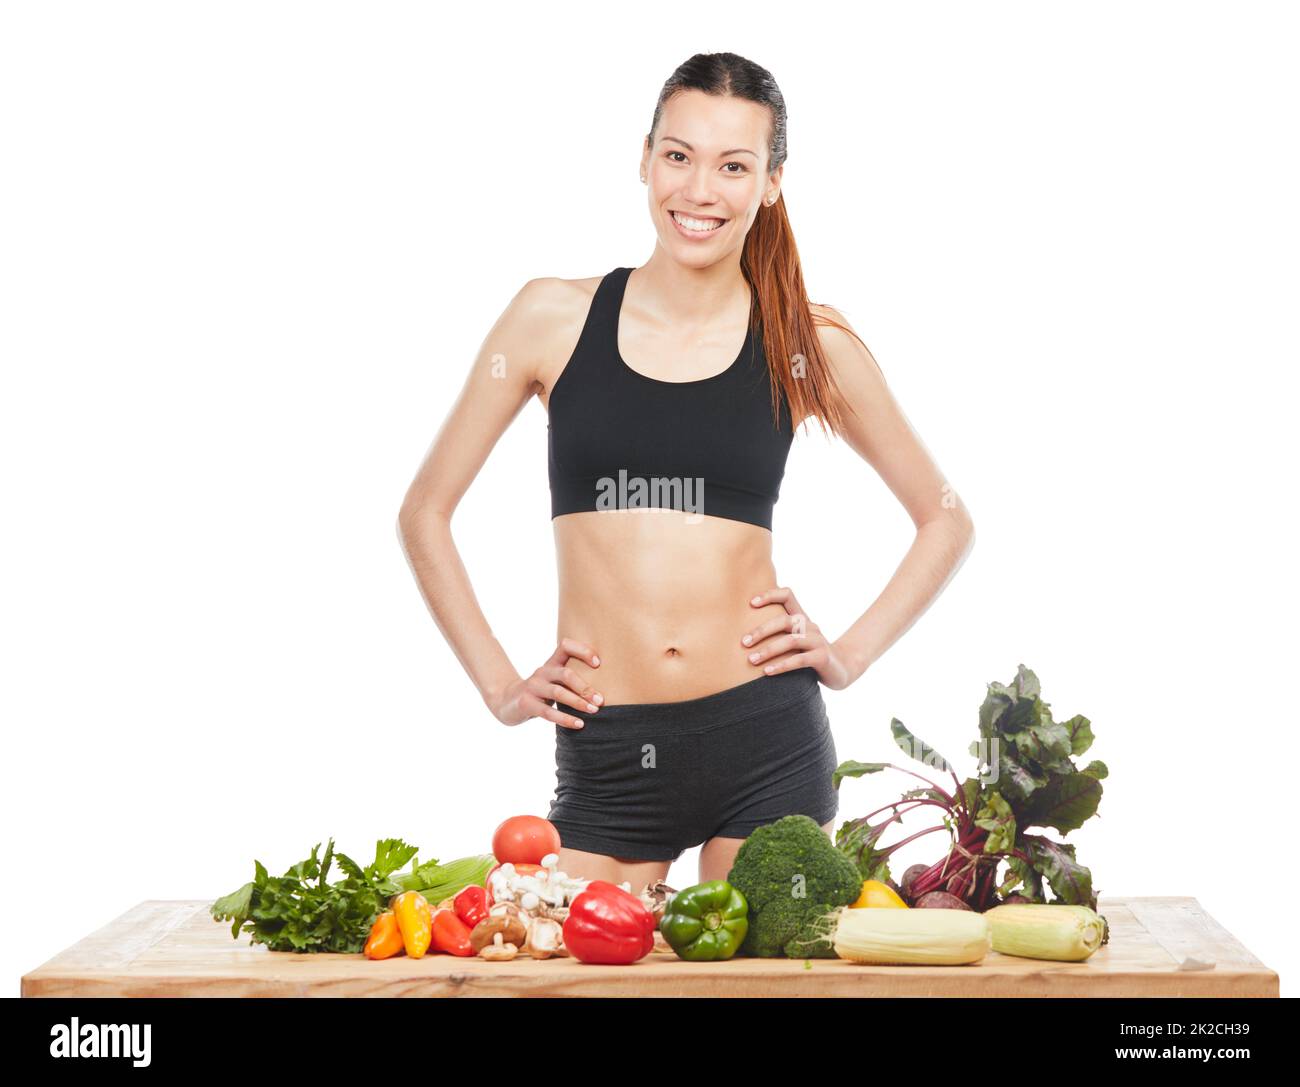 Haga que comer sano sea su hábito. Retrato de estudio de una atractiva mujer joven posando con una mesa llena de verduras sobre un fondo blanco. Foto de stock